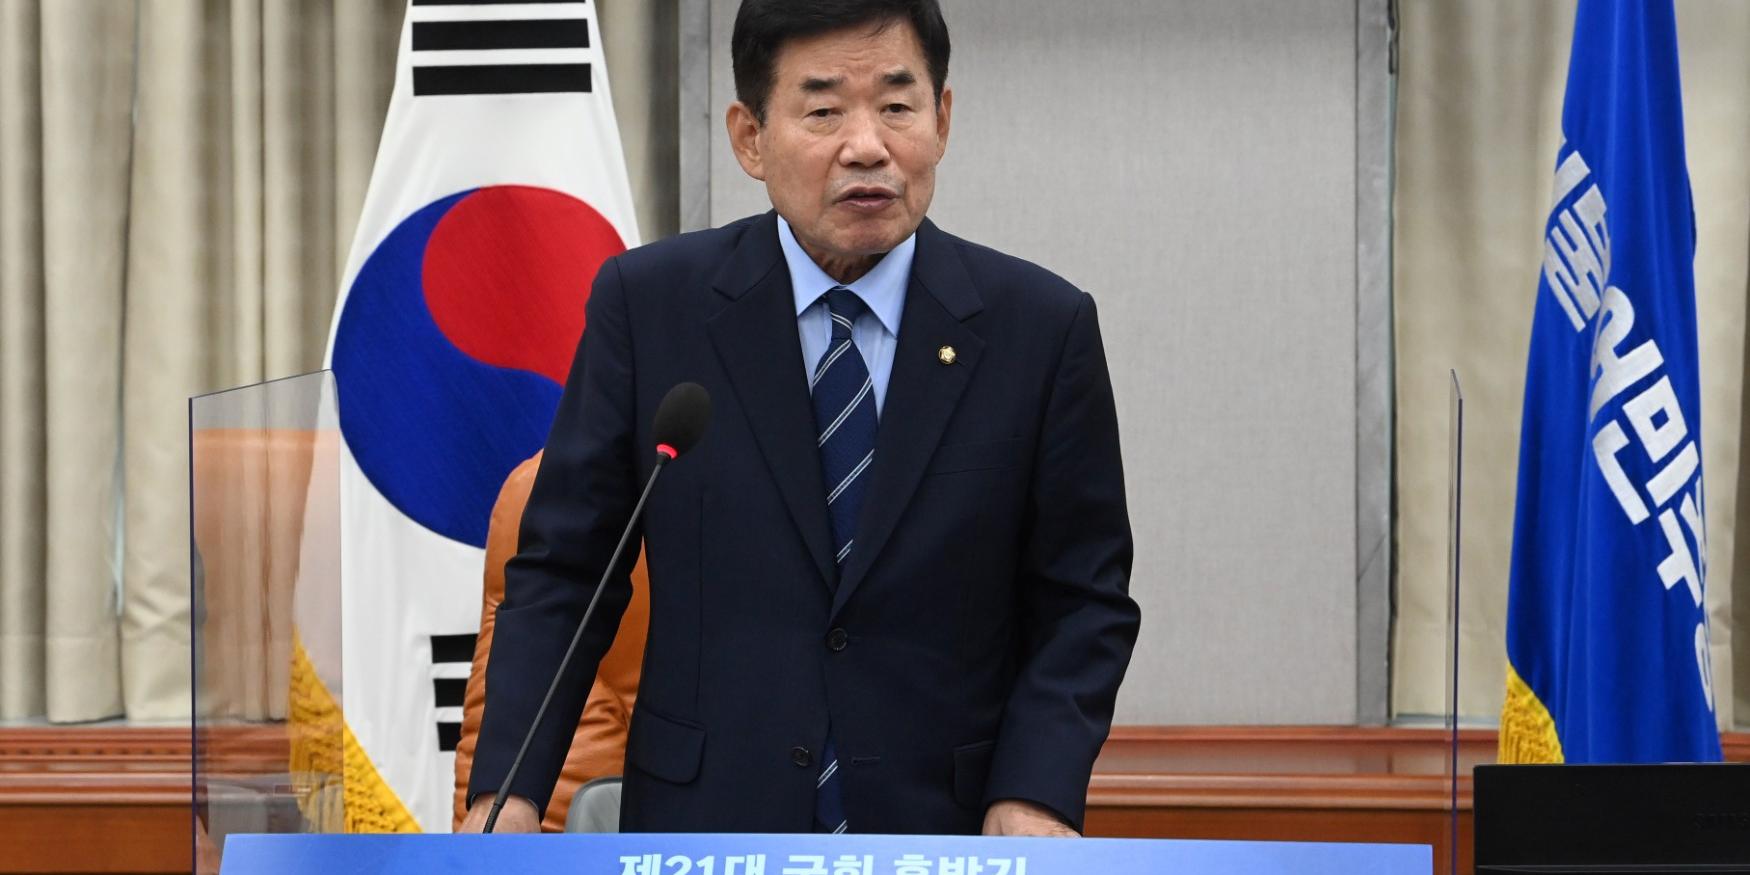 국회의장 후보에 21대 최고령 김진표, 중도성향으로 '협치' 적임자 평가